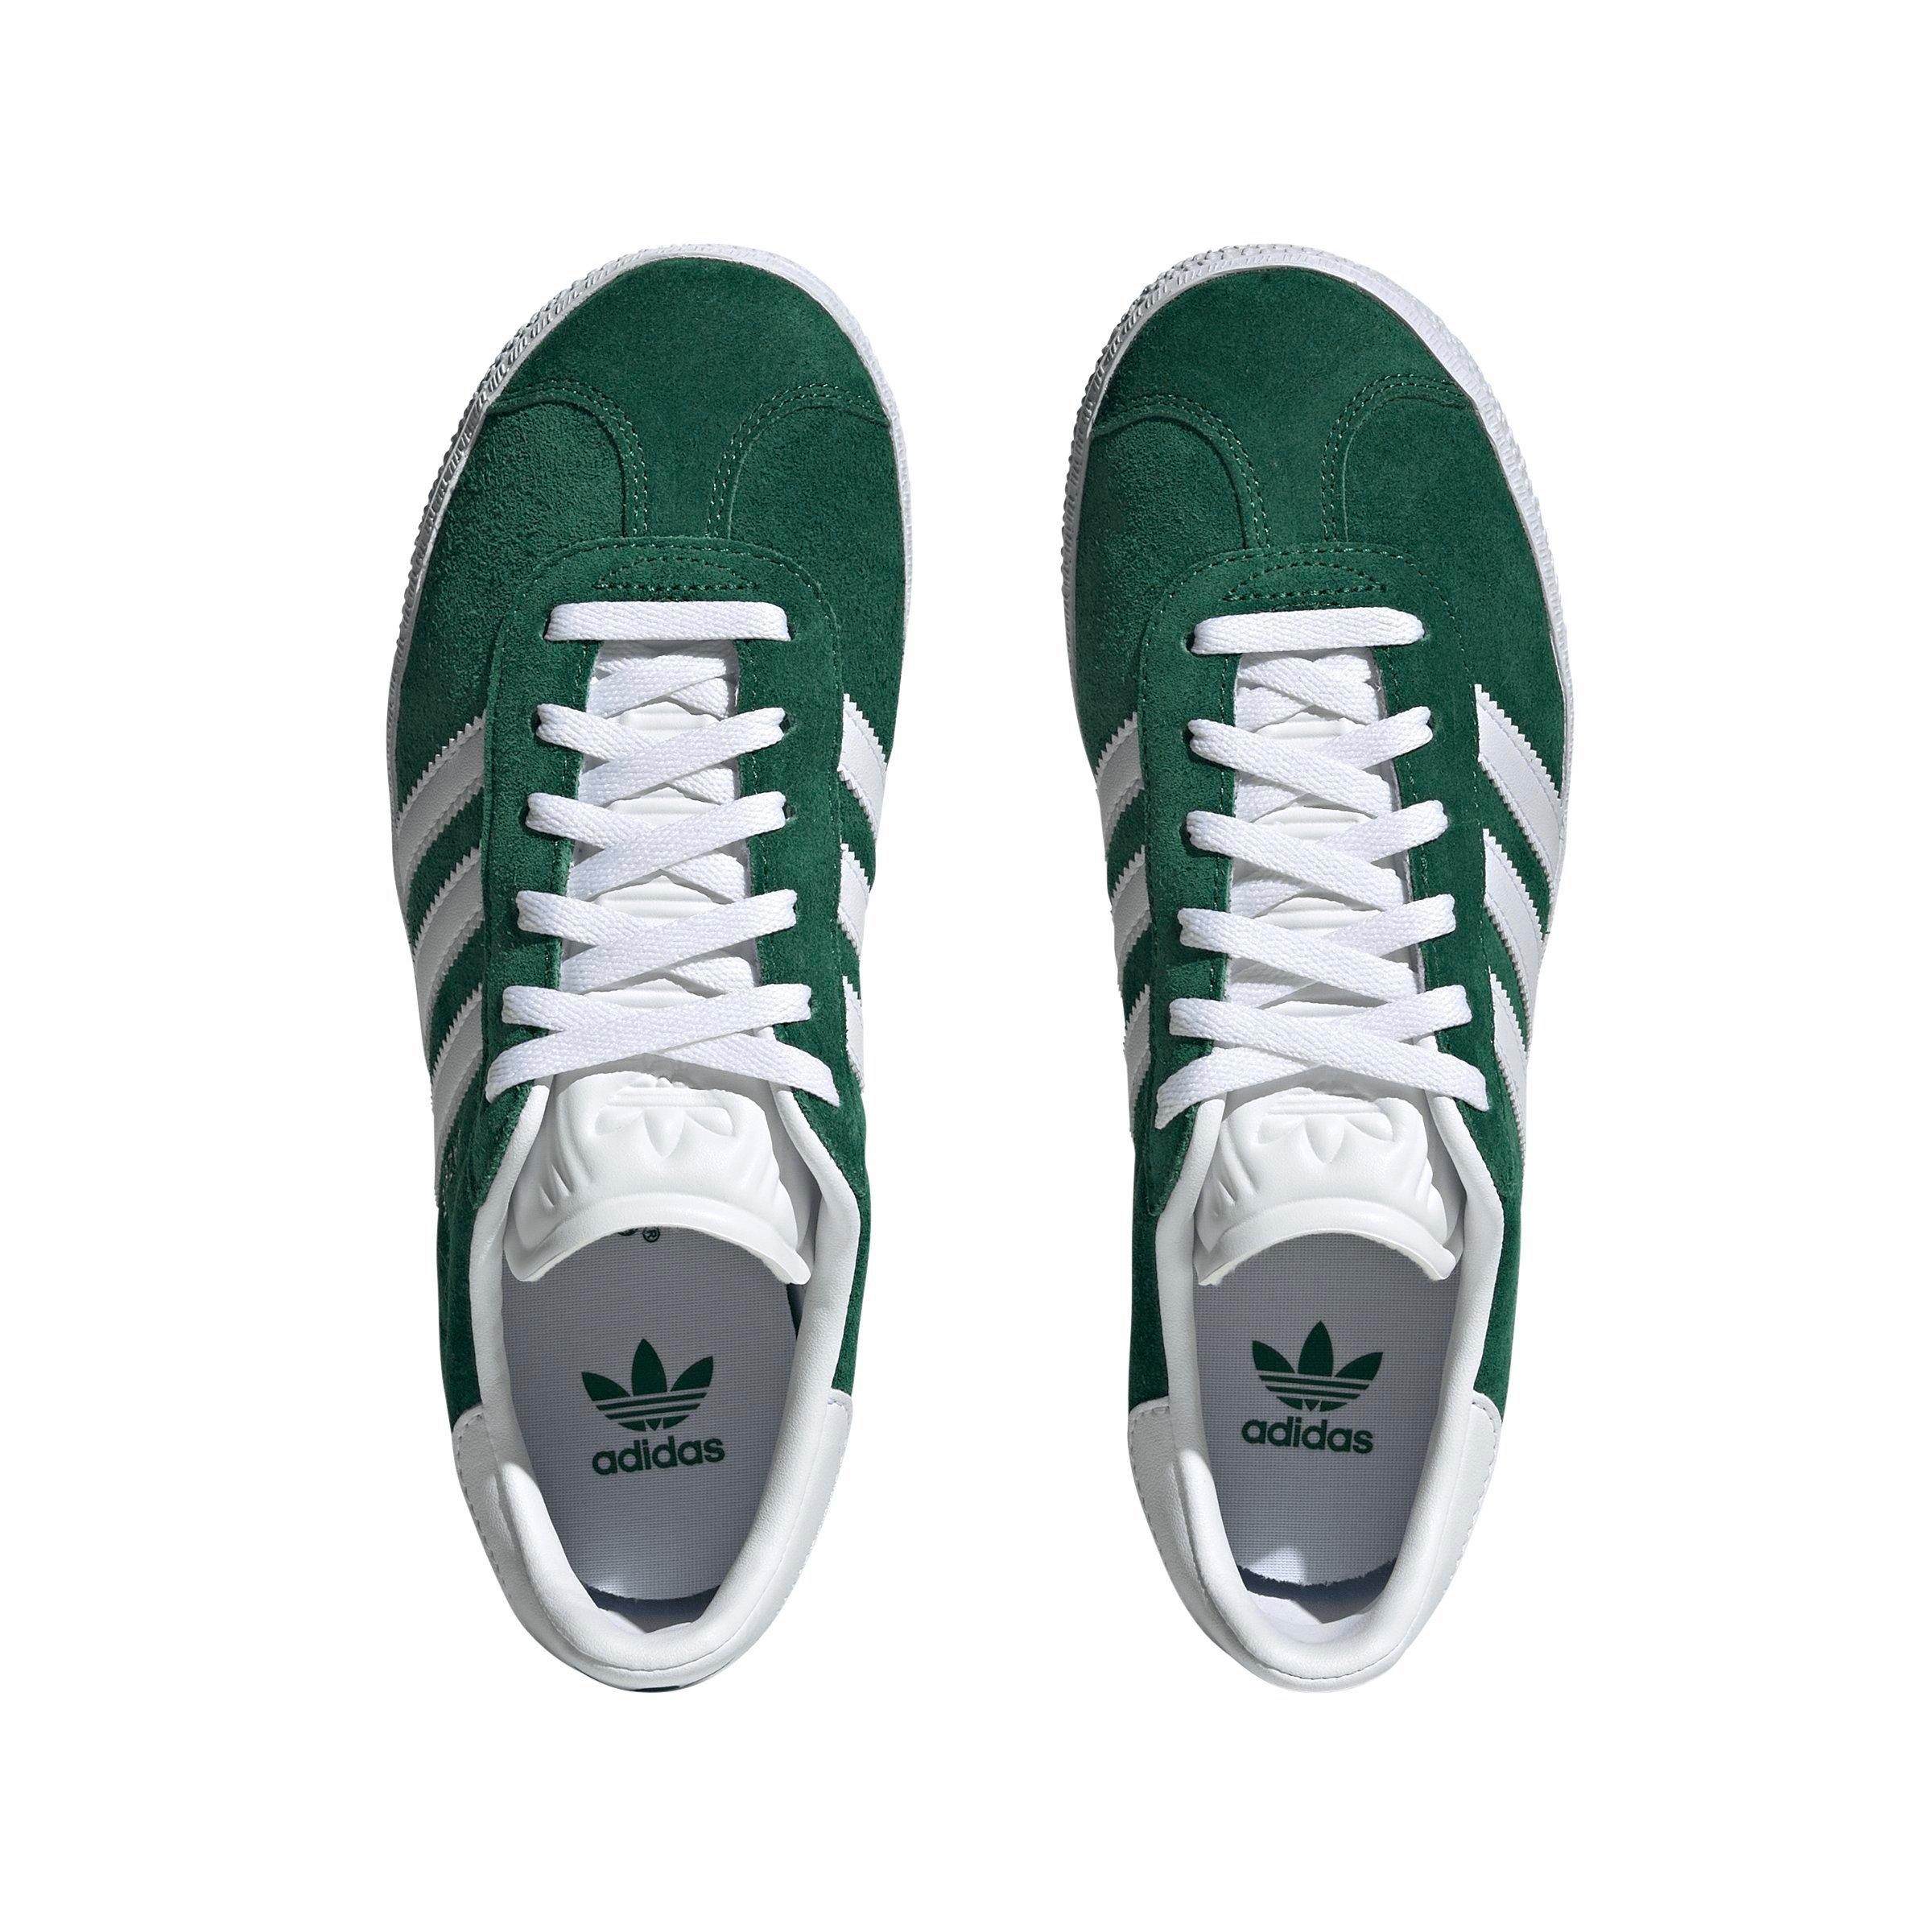 adidas Originals Gazelle Dark Green/Cloud White/Ftwr White Grade